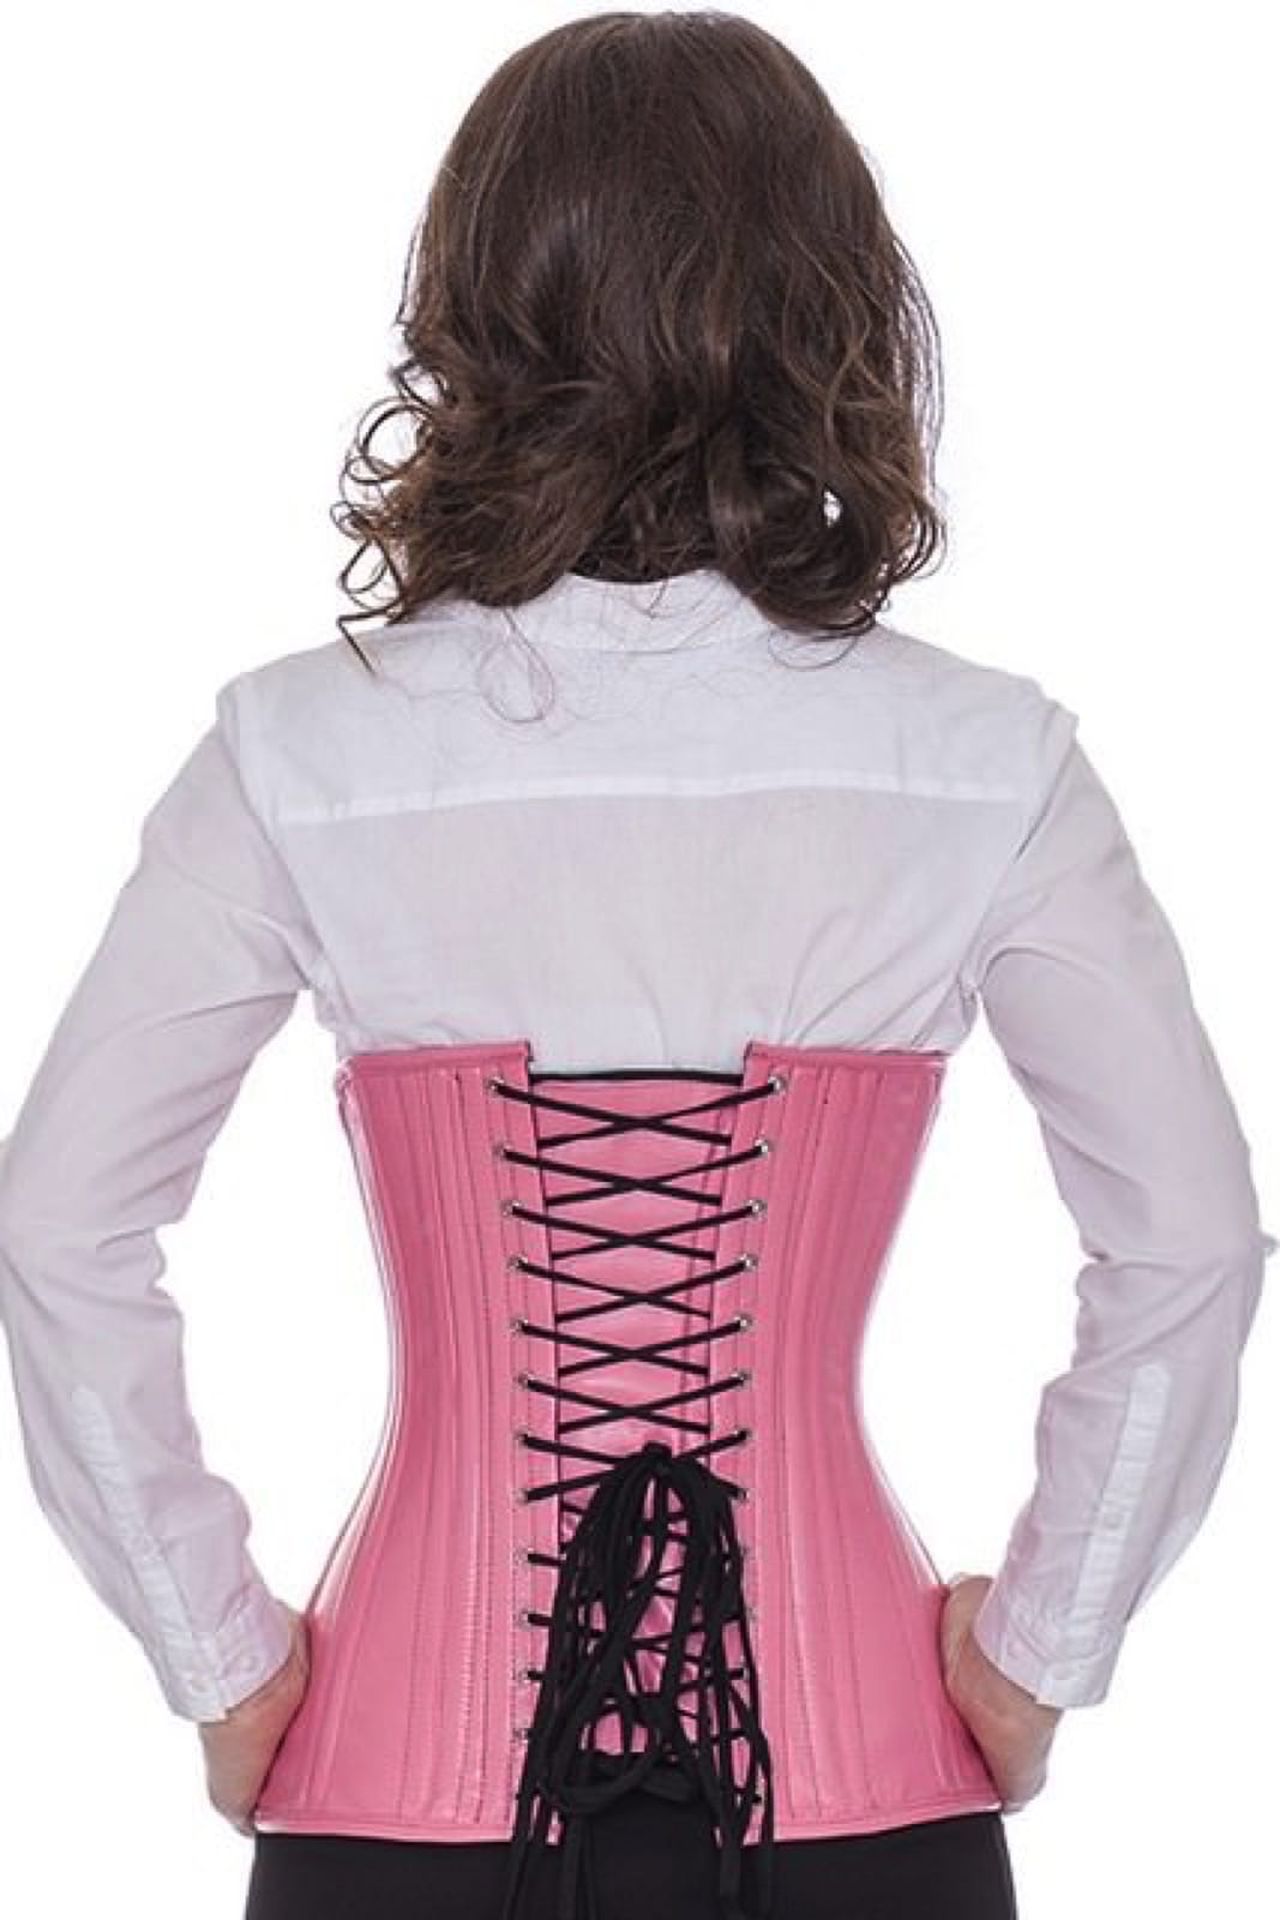 Corse rosa cuero bajo pecho ondeado corset ln22